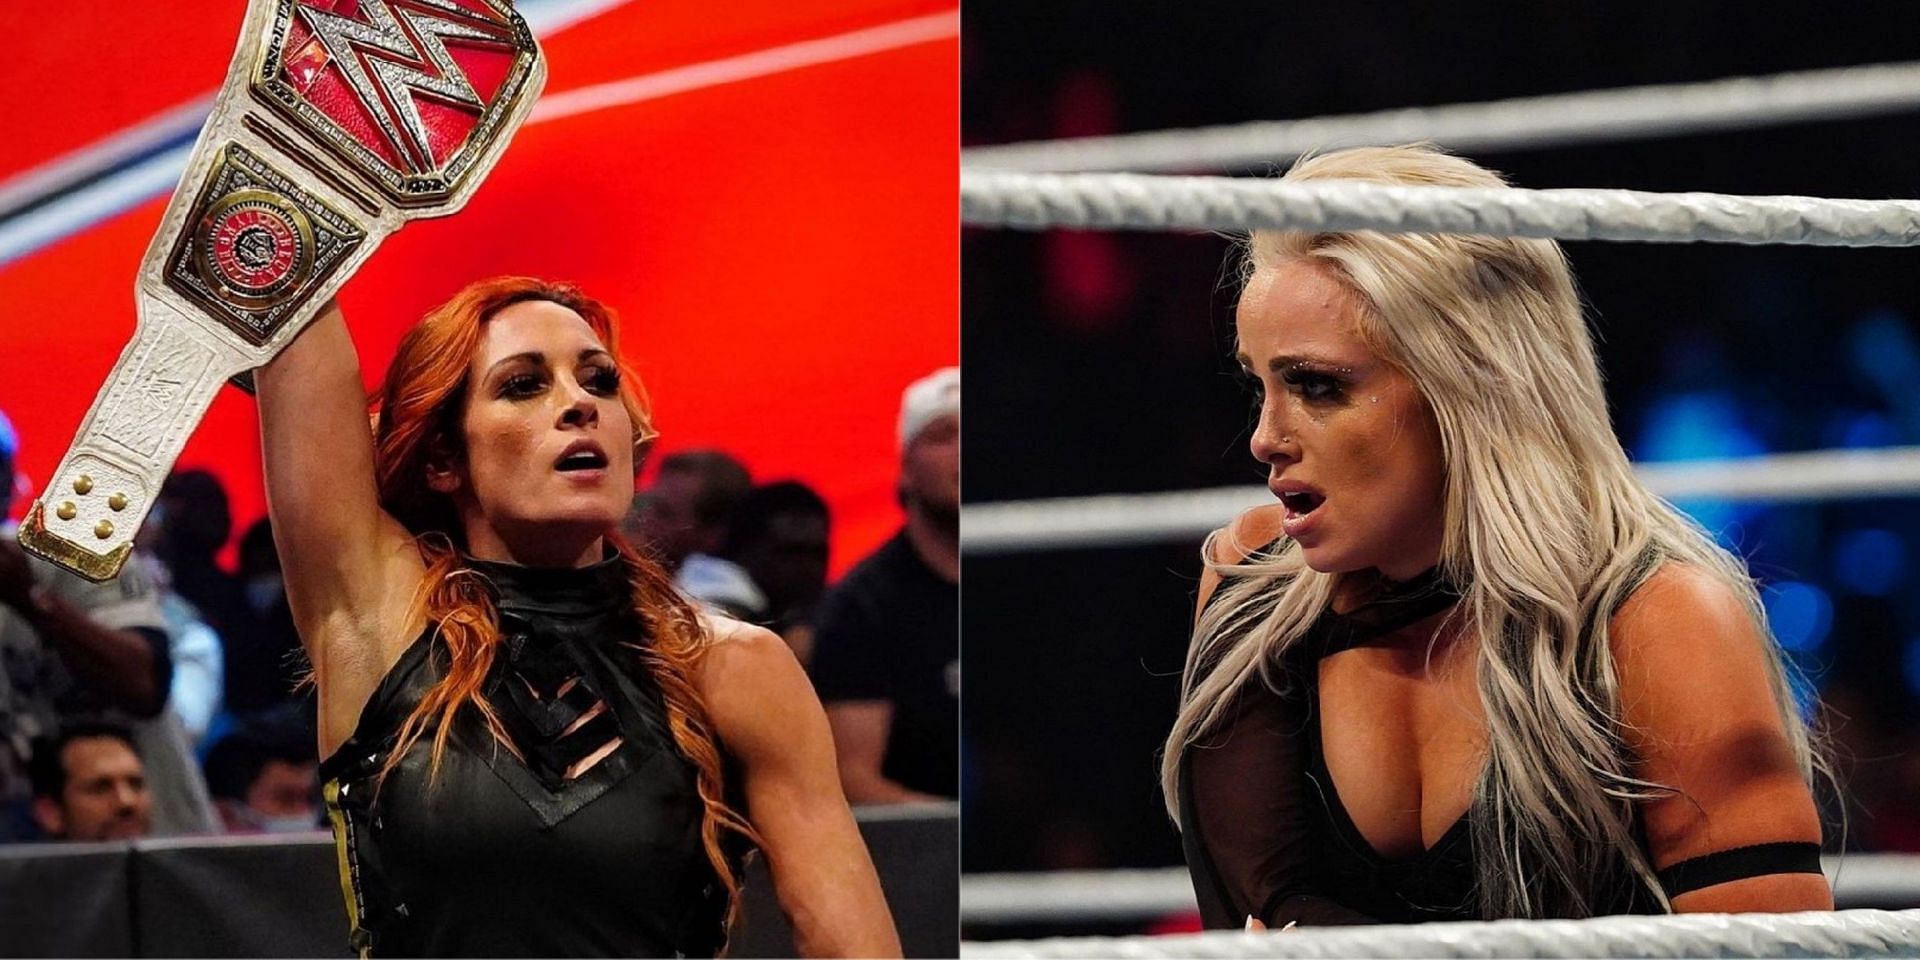 WWE Raw को लेकर ट्विटर पर फैंस की अलग-अलग प्रतिक्रियाएं आई